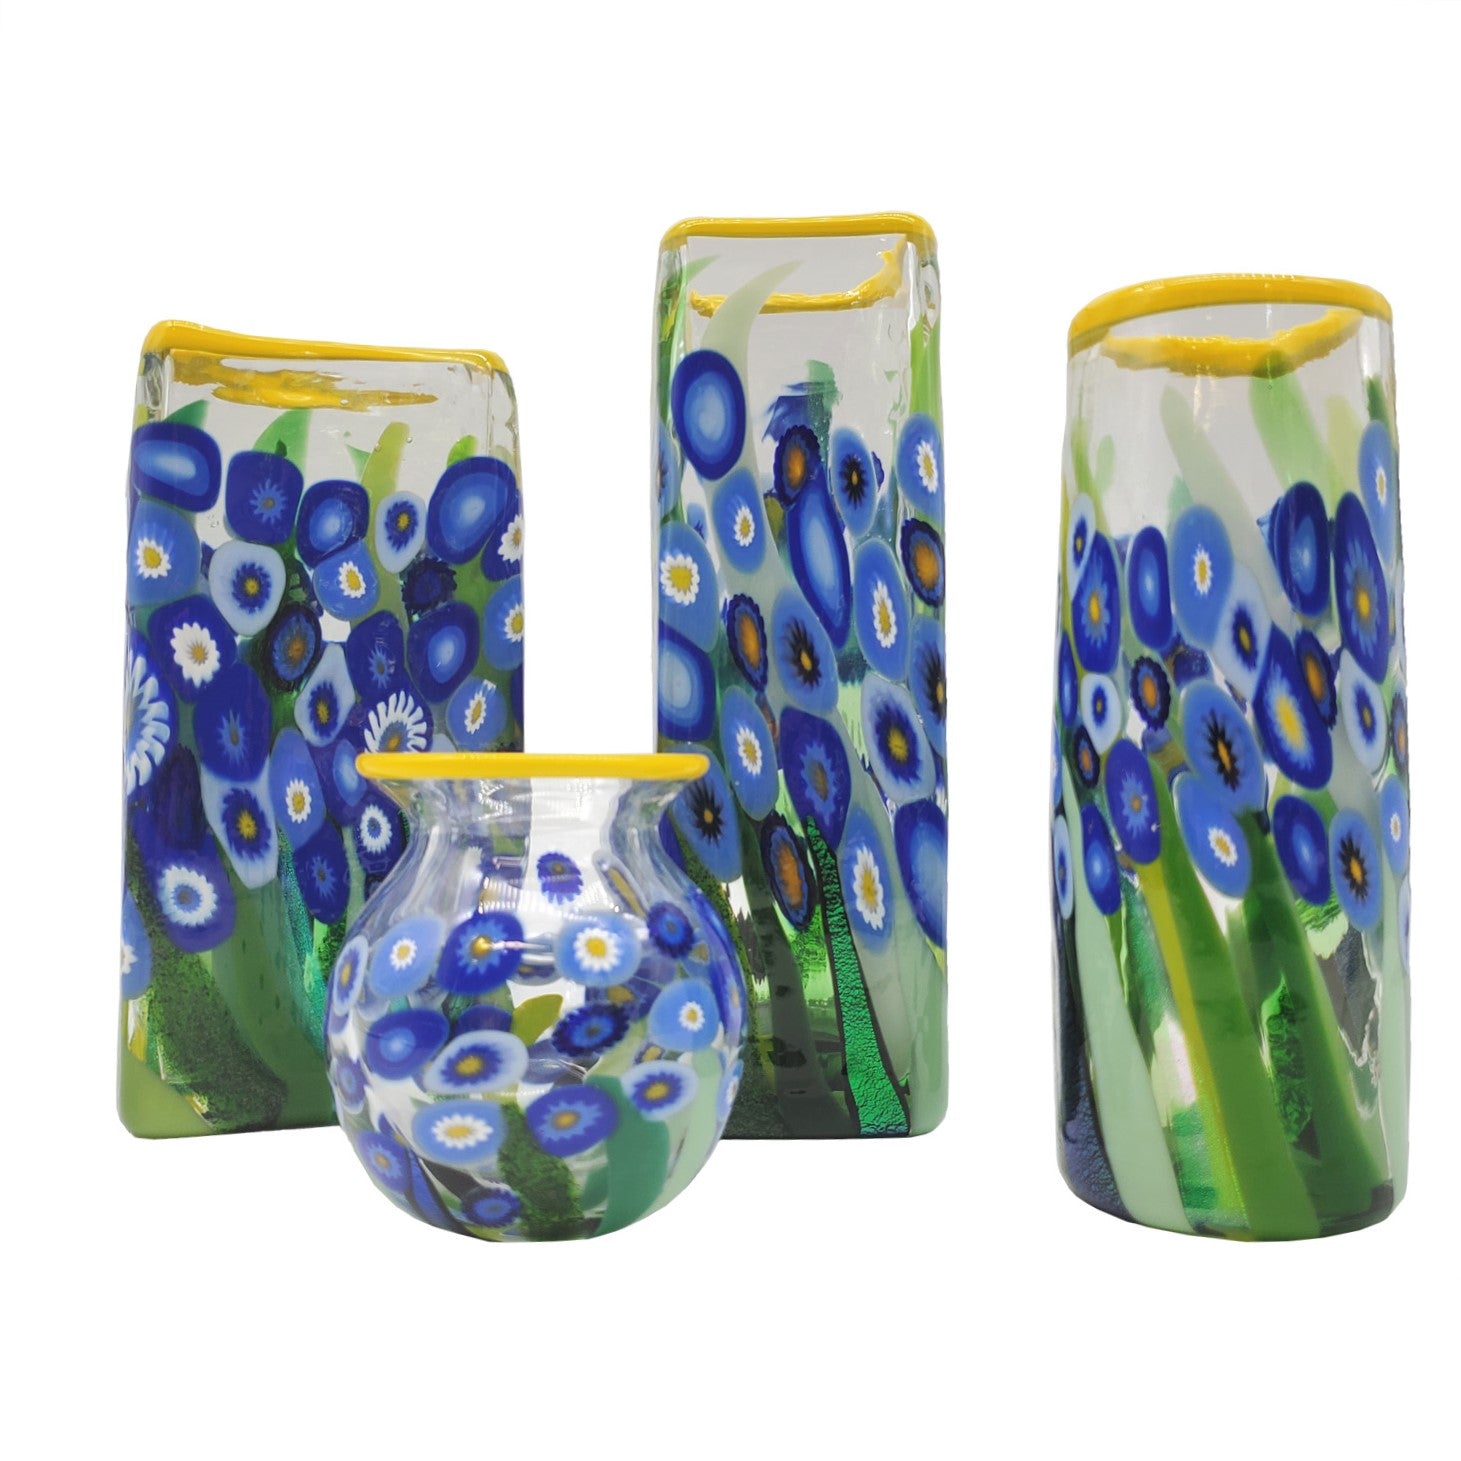 Glass Vase - Blue Flowers